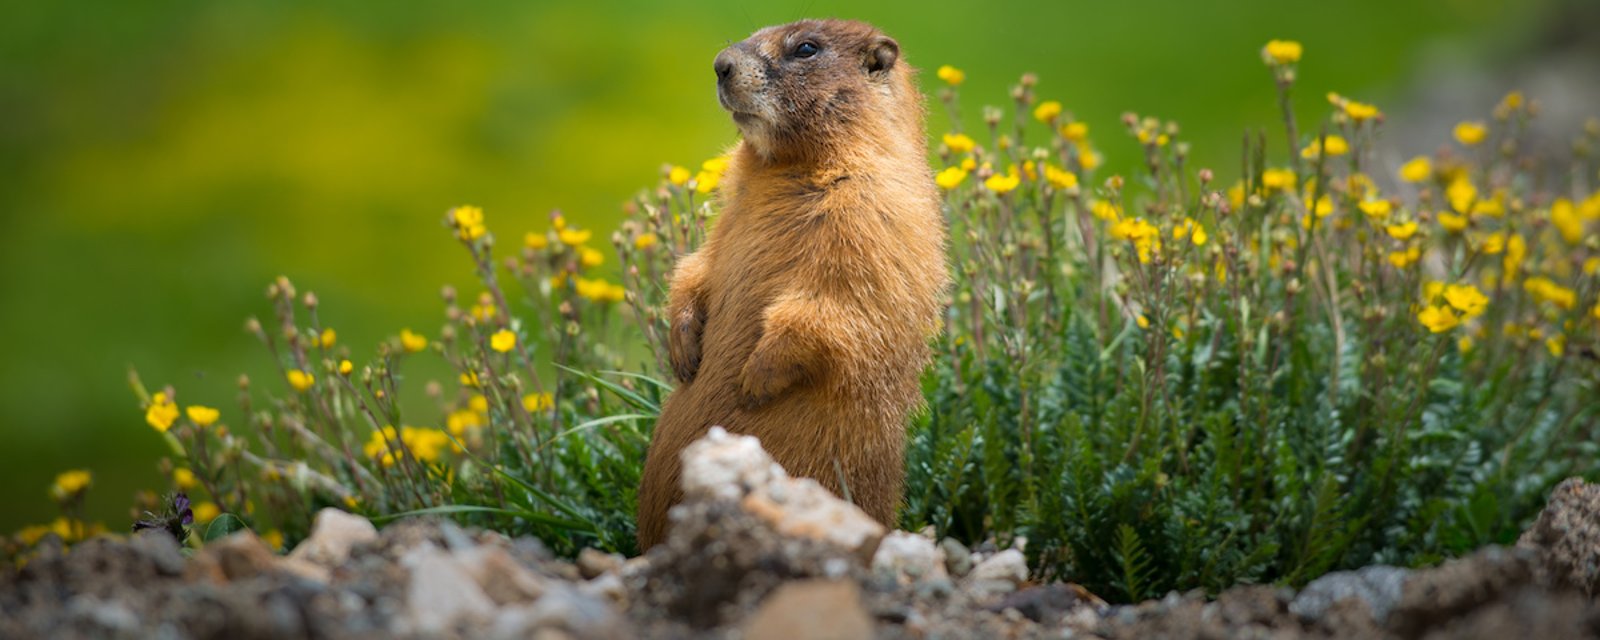 Comment décourager les marmottes de visiter votre jardin